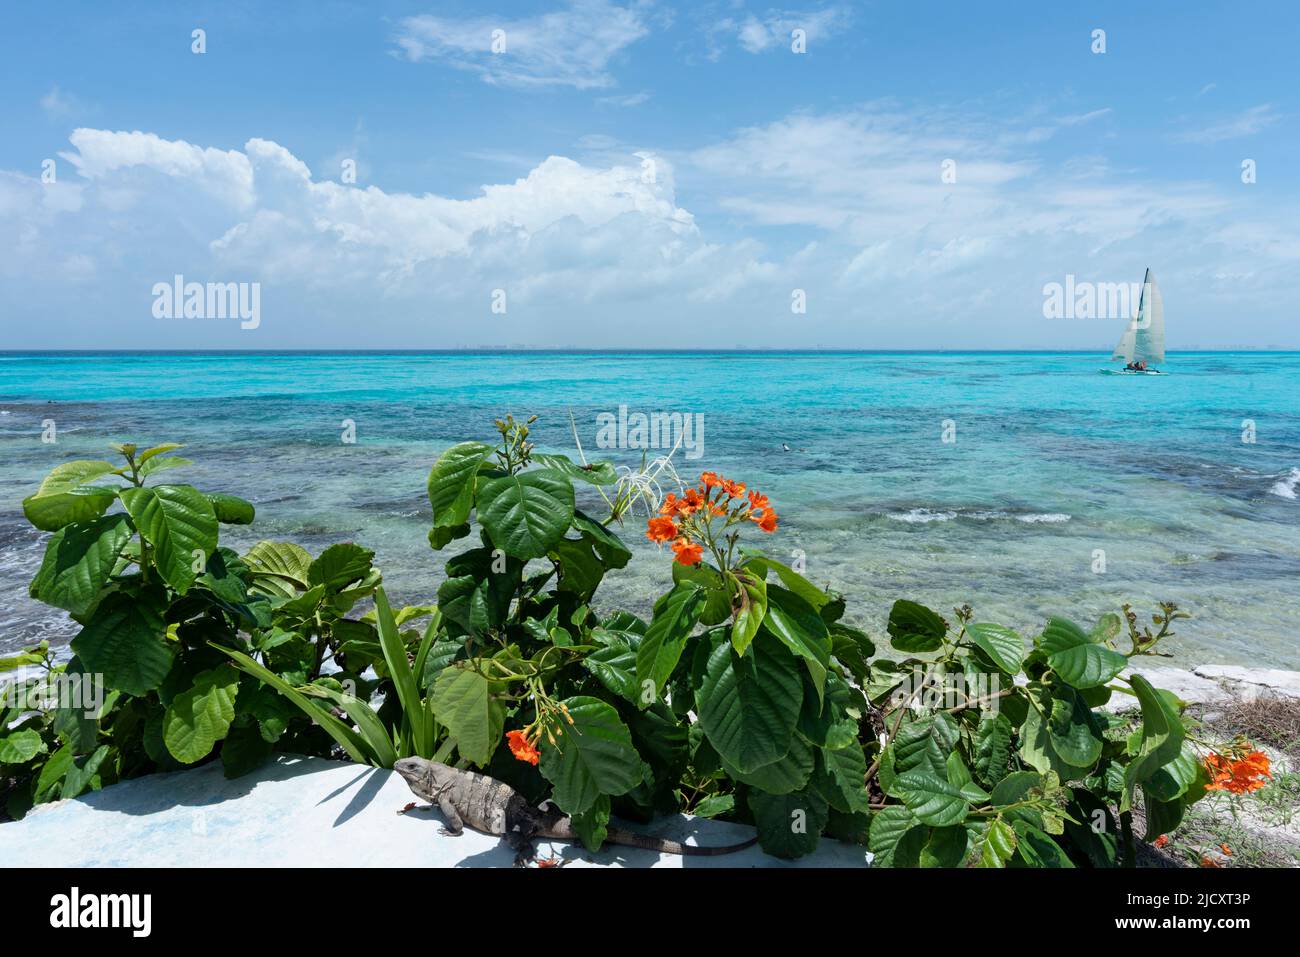 Vista general del Mar Caribe, arbustos con flores, y un velero en un día soleado. Isla Mujeres, México Foto de stock